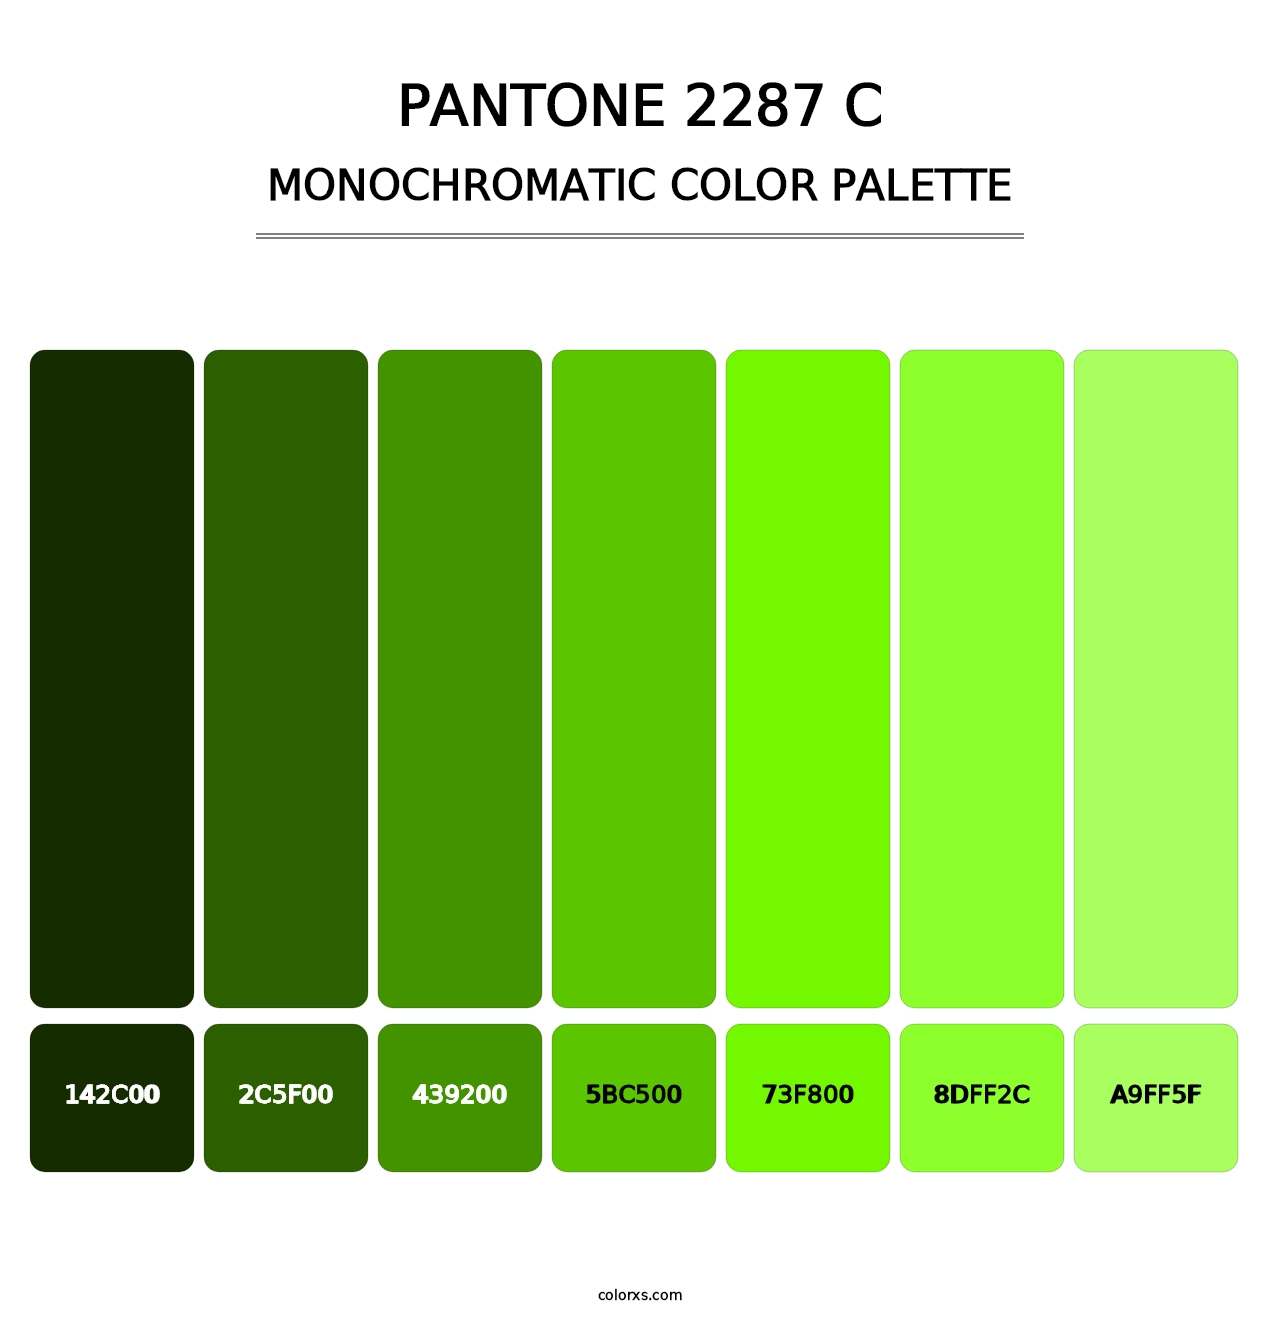 PANTONE 2287 C - Monochromatic Color Palette